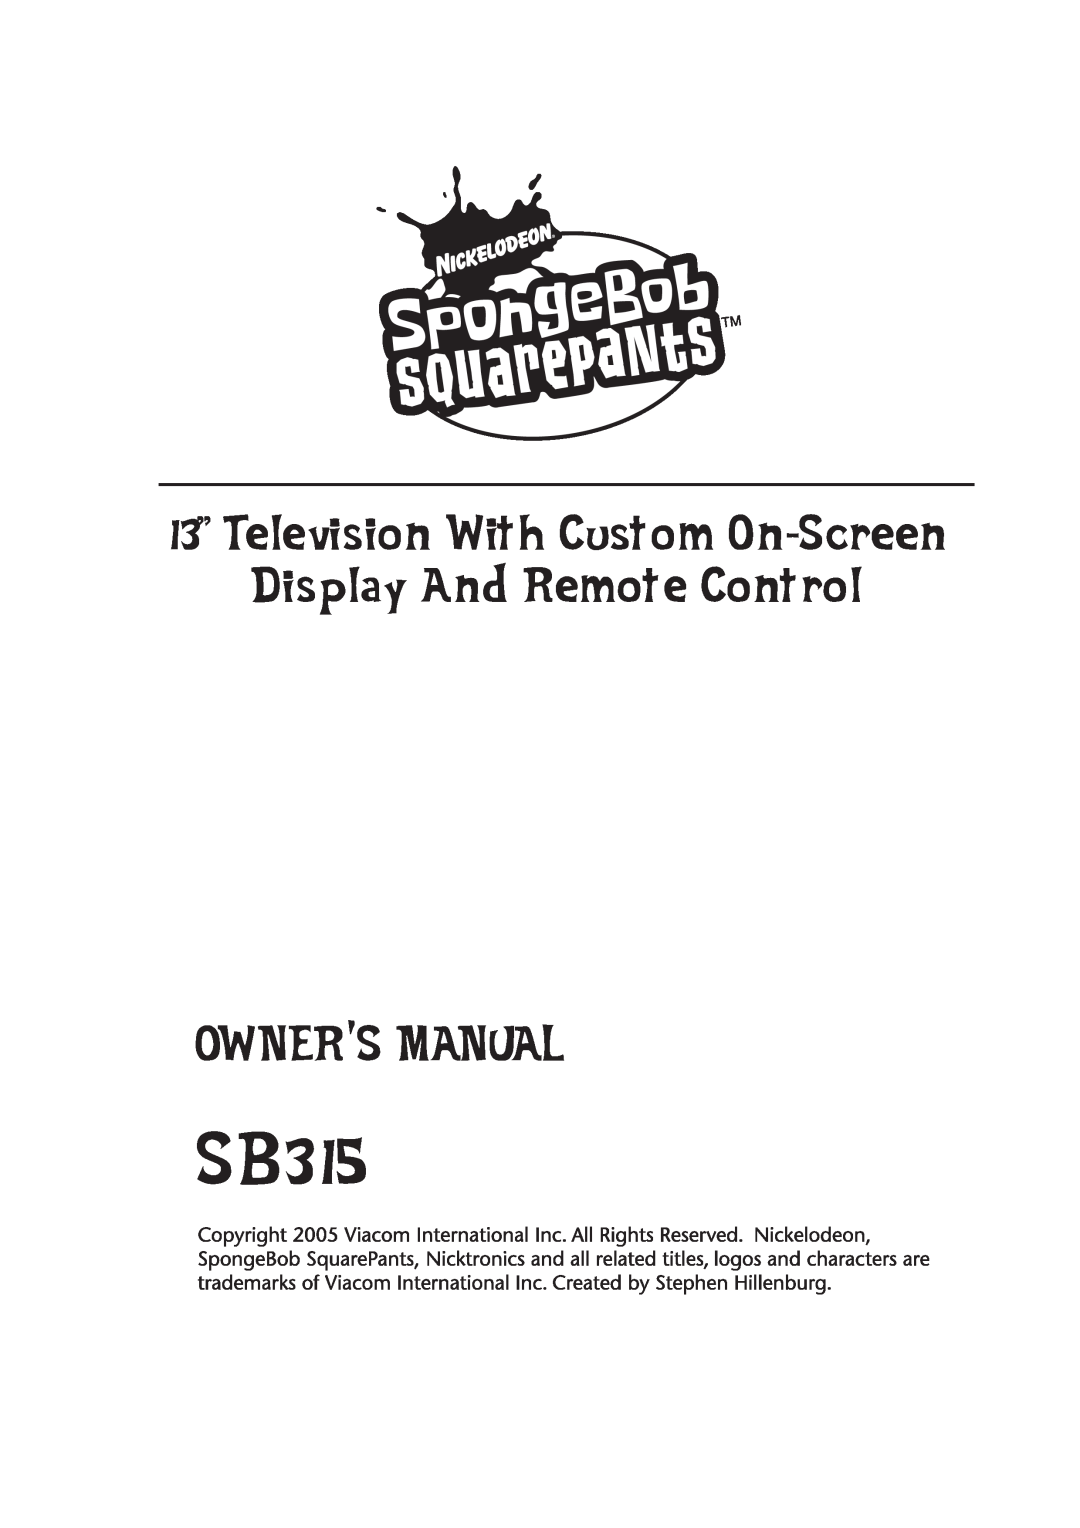 Emerson SB315 manual 